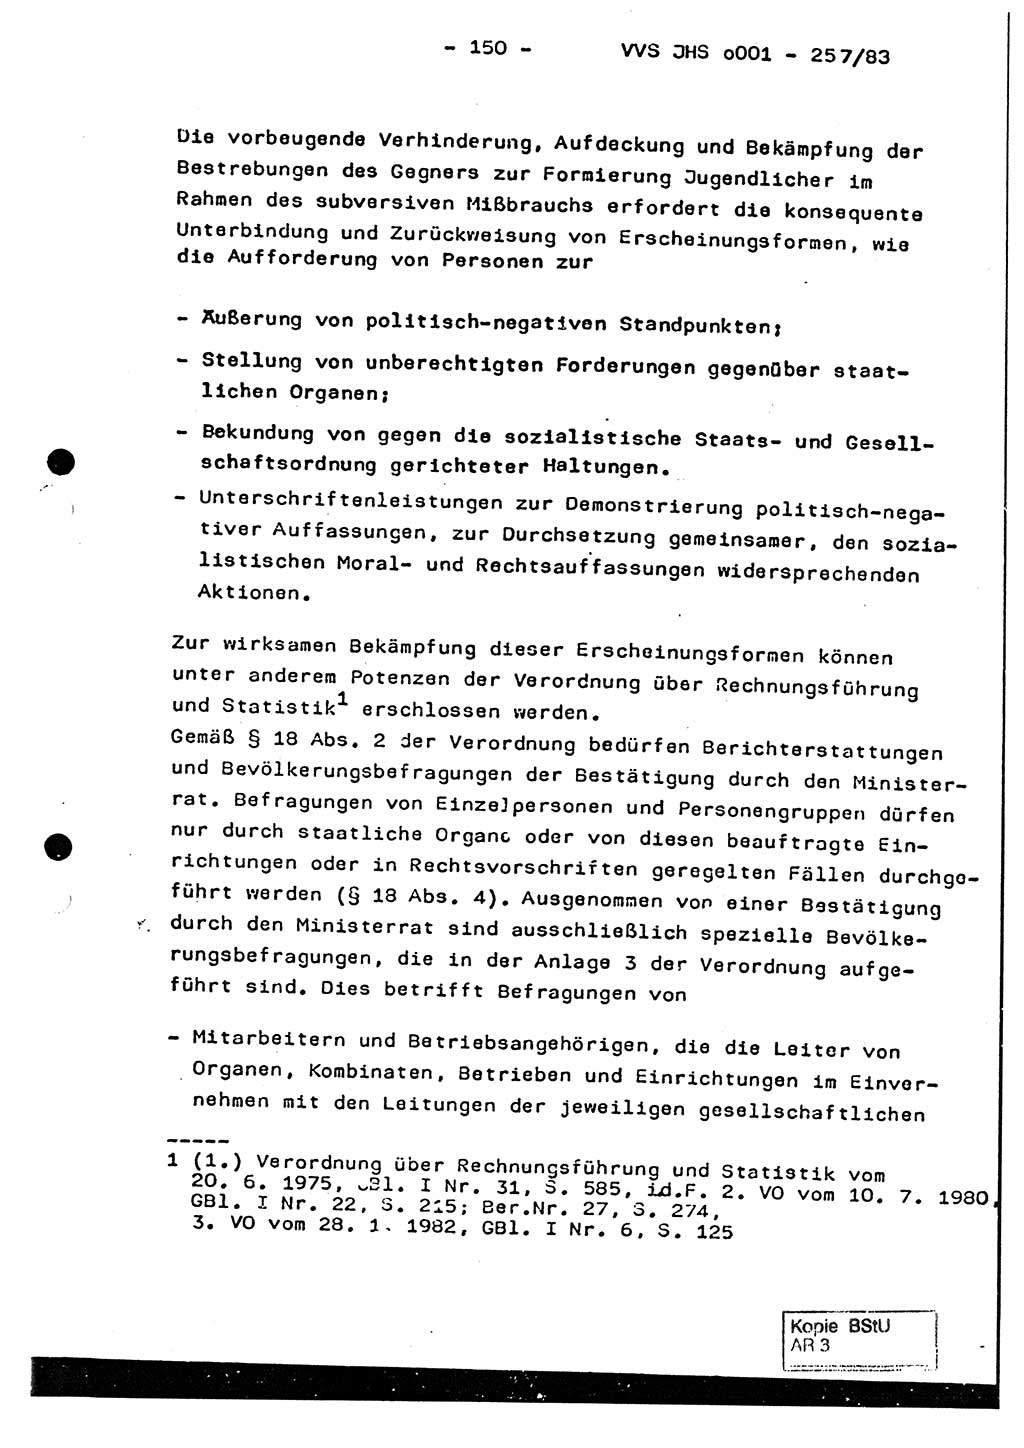 Dissertation, Oberst Helmut Lubas (BV Mdg.), Oberstleutnant Manfred Eschberger (HA IX), Oberleutnant Hans-Jürgen Ludwig (JHS), Ministerium für Staatssicherheit (MfS) [Deutsche Demokratische Republik (DDR)], Juristische Hochschule (JHS), Vertrauliche Verschlußsache (VVS) o001-257/83, Potsdam 1983, Seite 150 (Diss. MfS DDR JHS VVS o001-257/83 1983, S. 150)